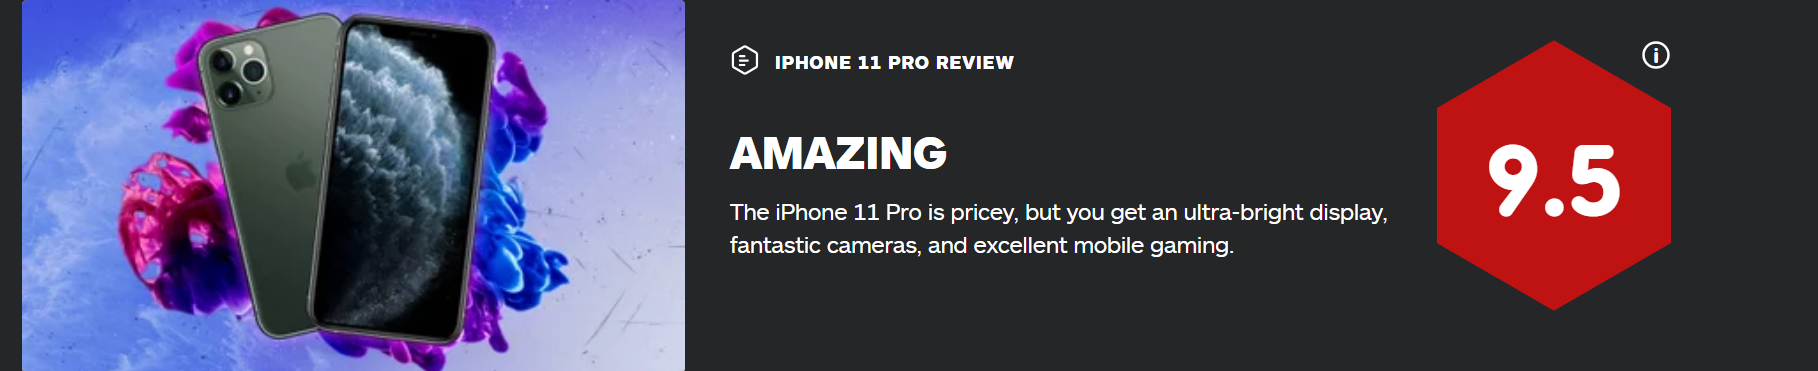 游戏网站IGN评价新iPhone：可以坚定地去购买